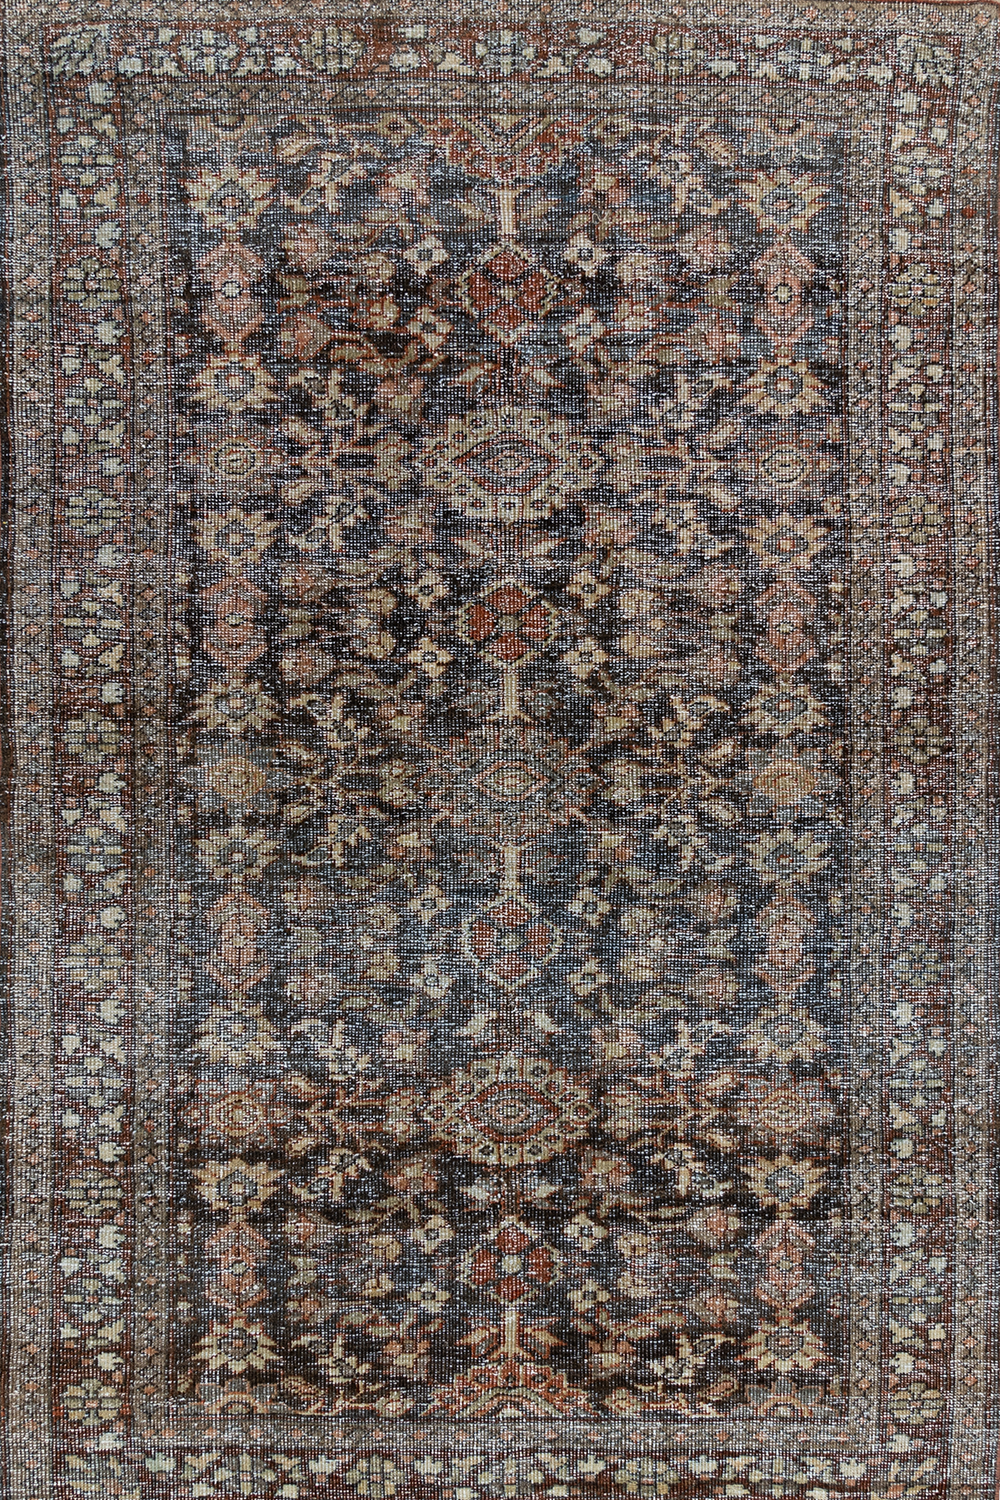 Antique Persian Mahal Rug